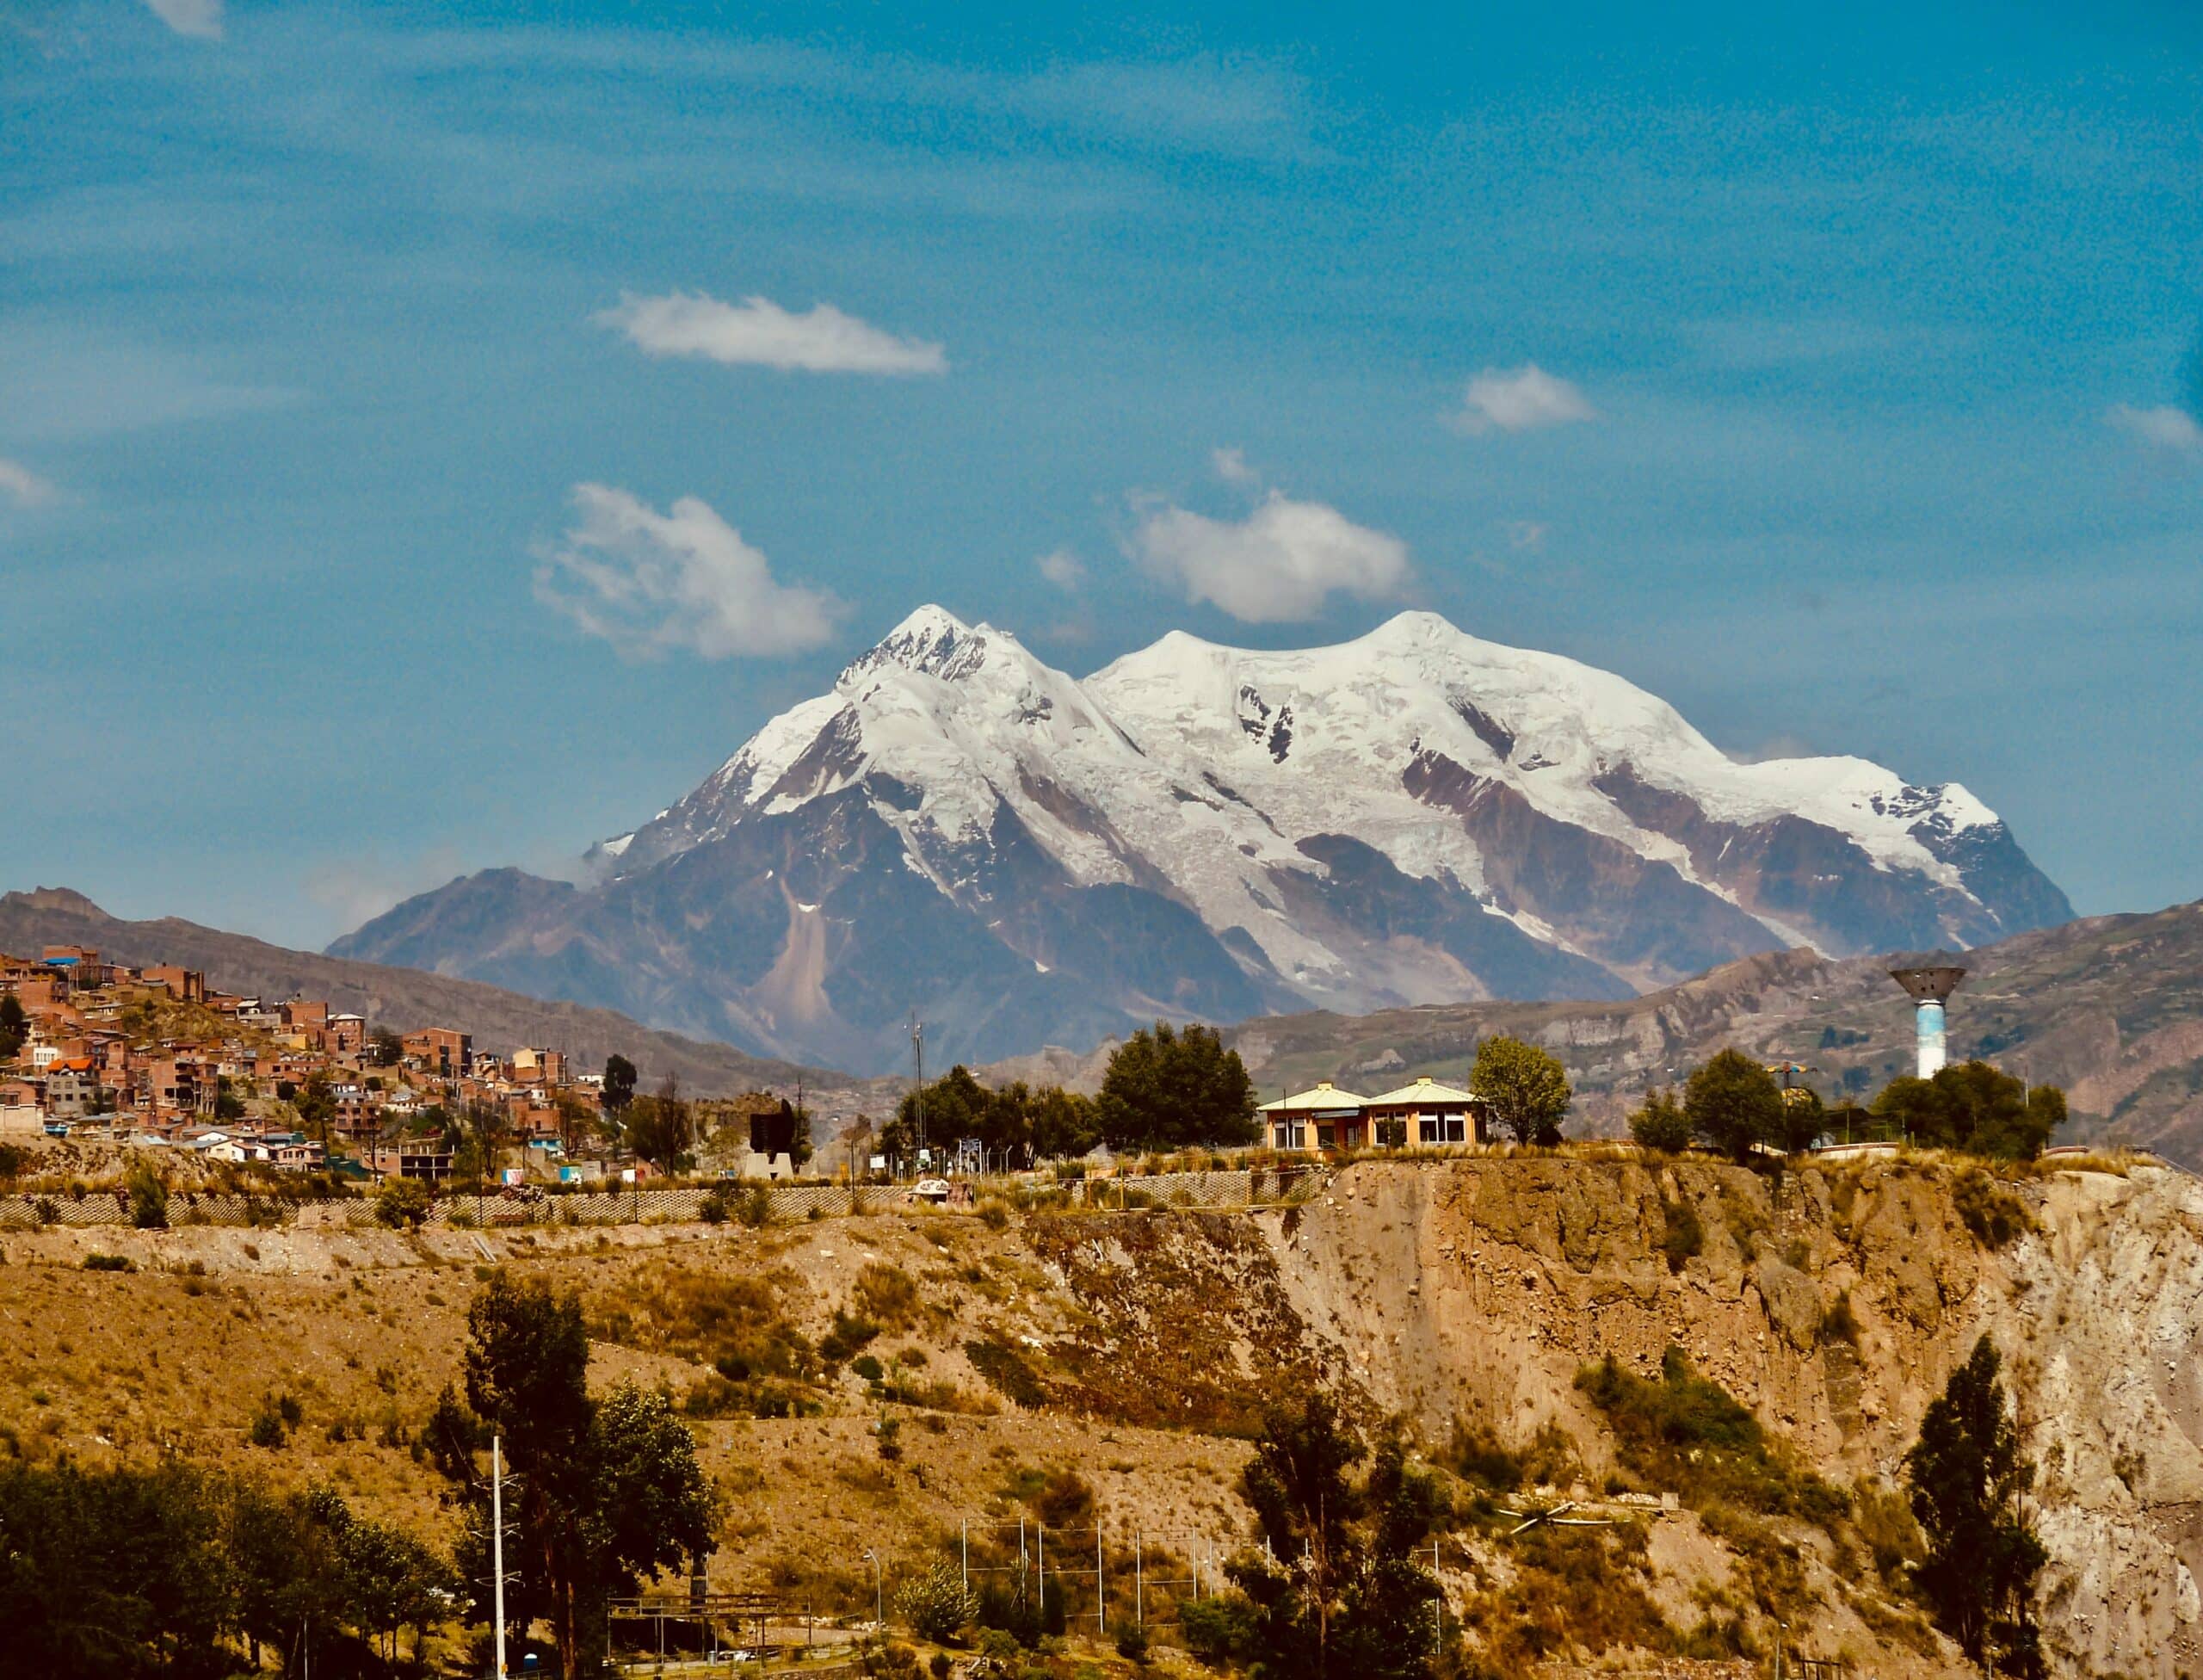 Vista da Montanha Illimani de 6438 metros na capital de La Paz, Bolívia, em um dia ensolarado de céu azul.